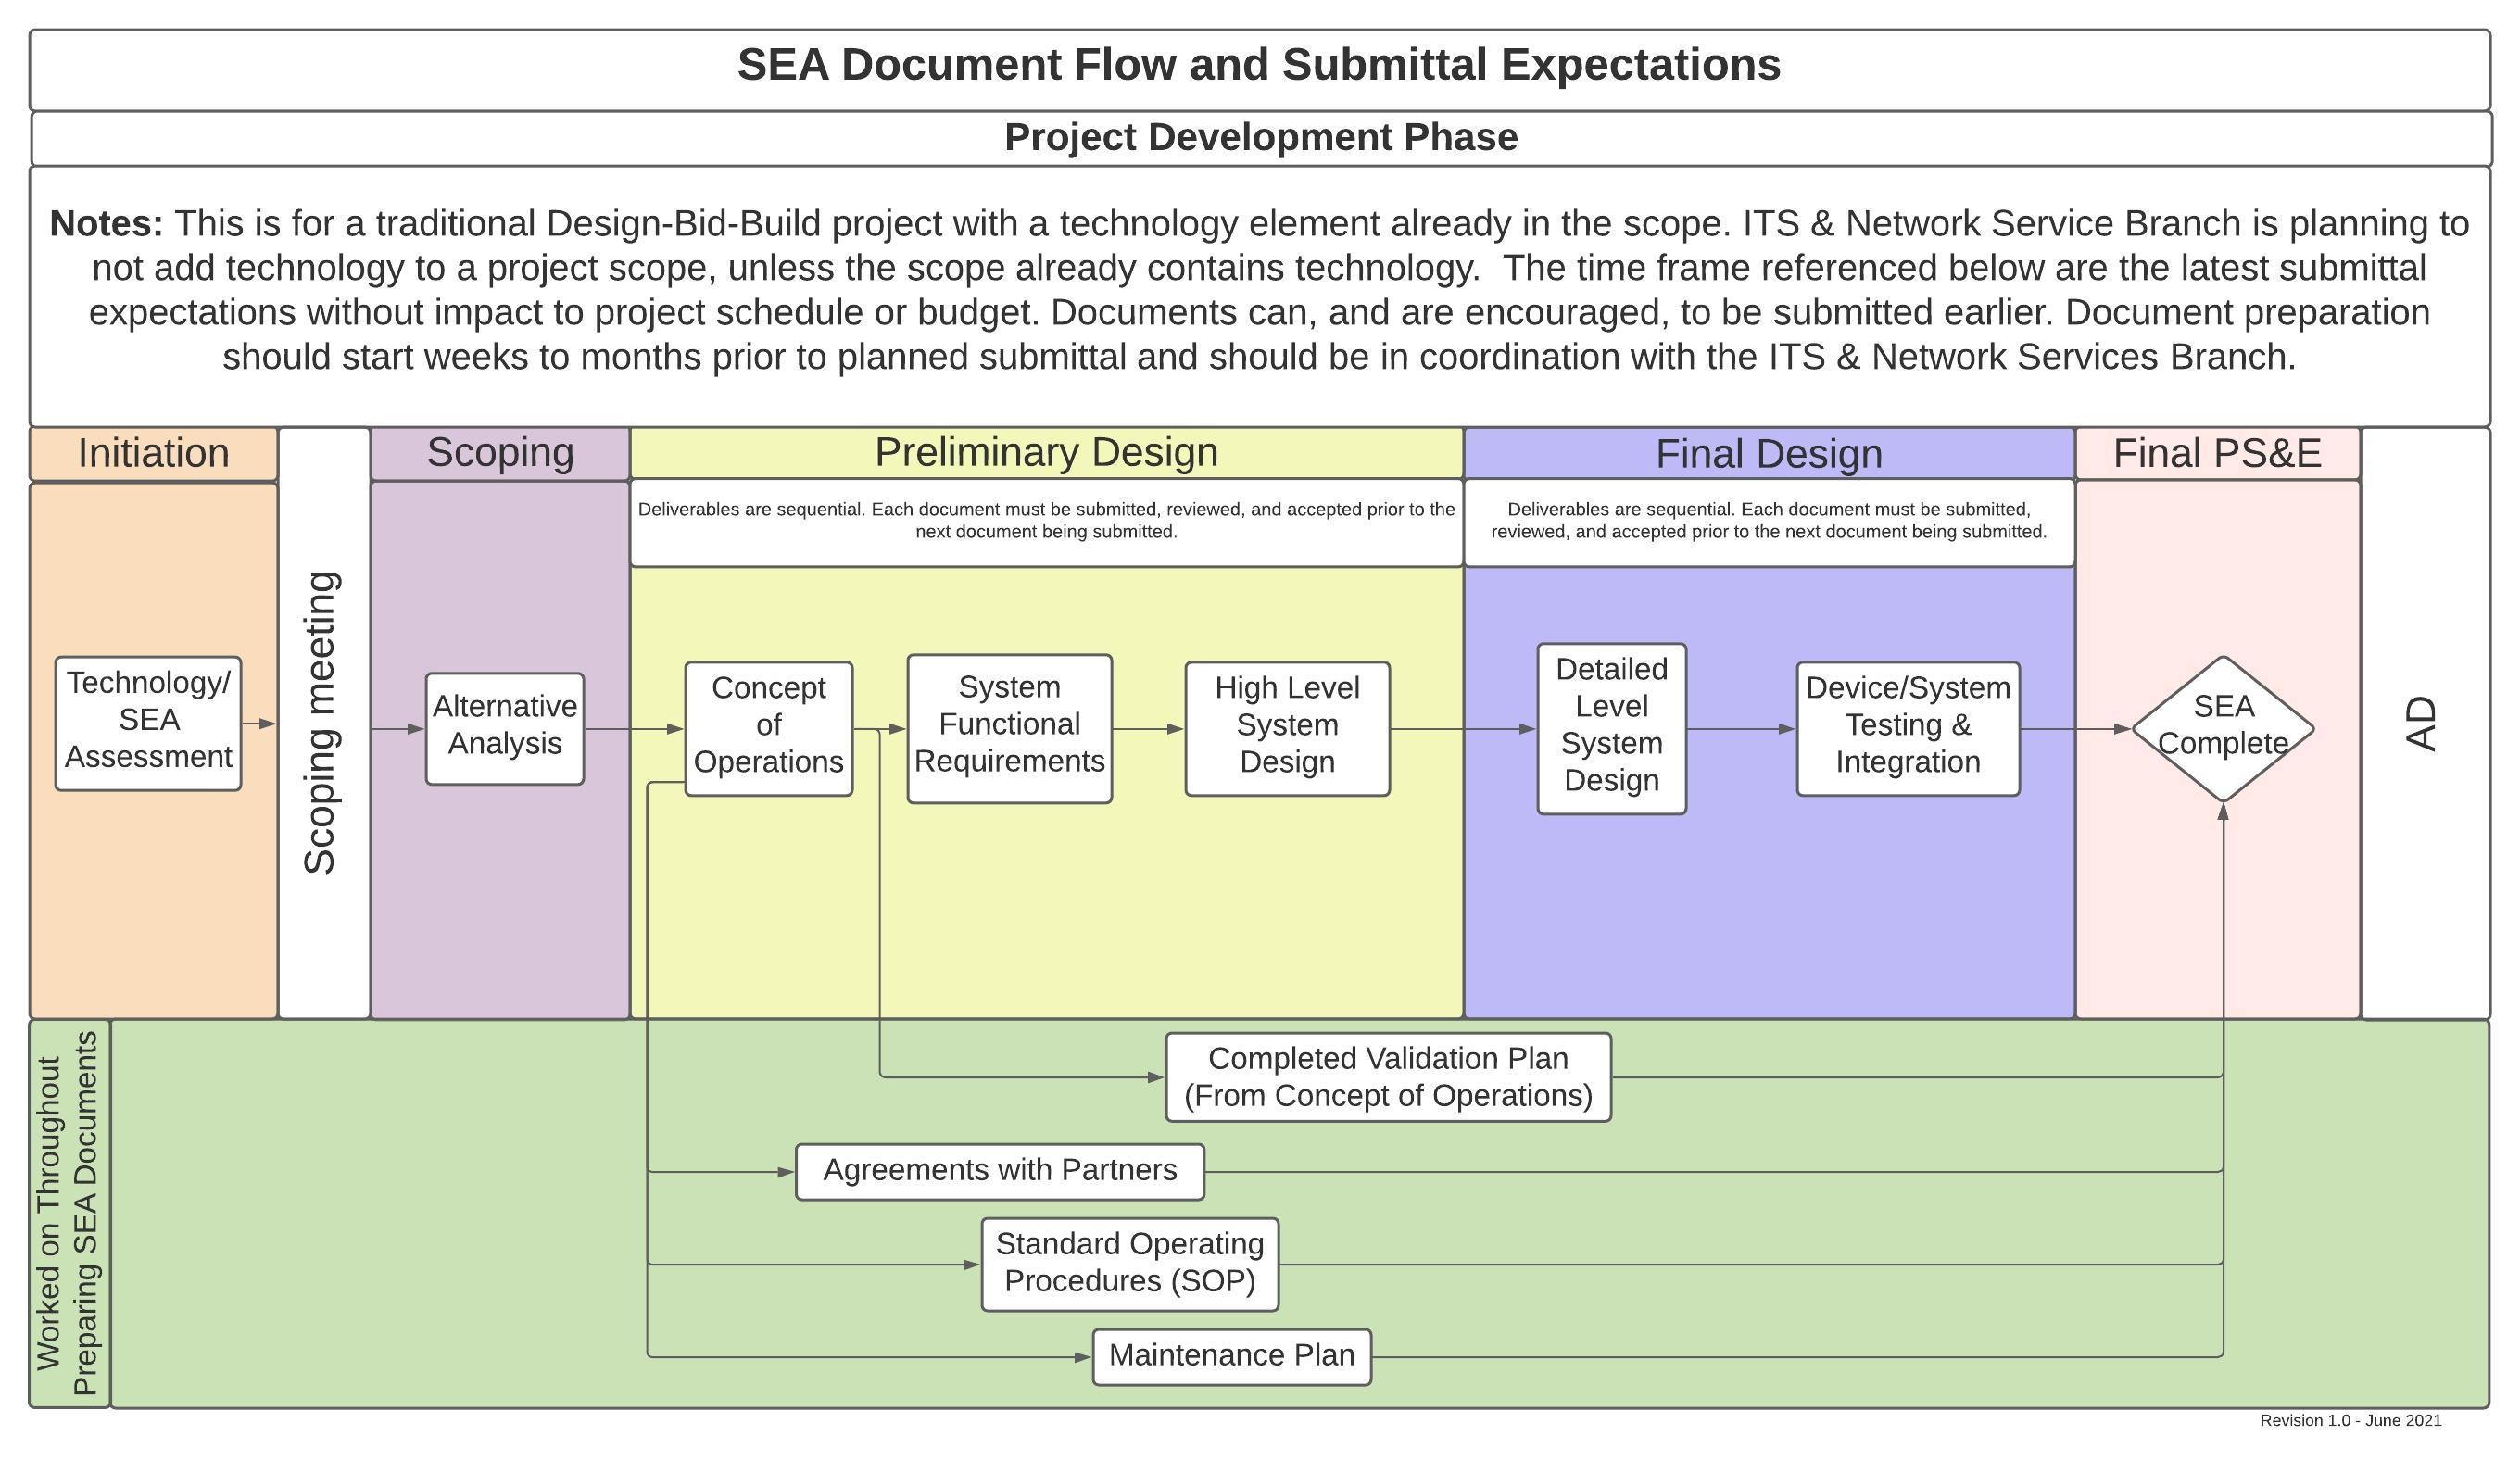 SEA Document Flow  - V1.0 - 06.2021.jpeg detail image